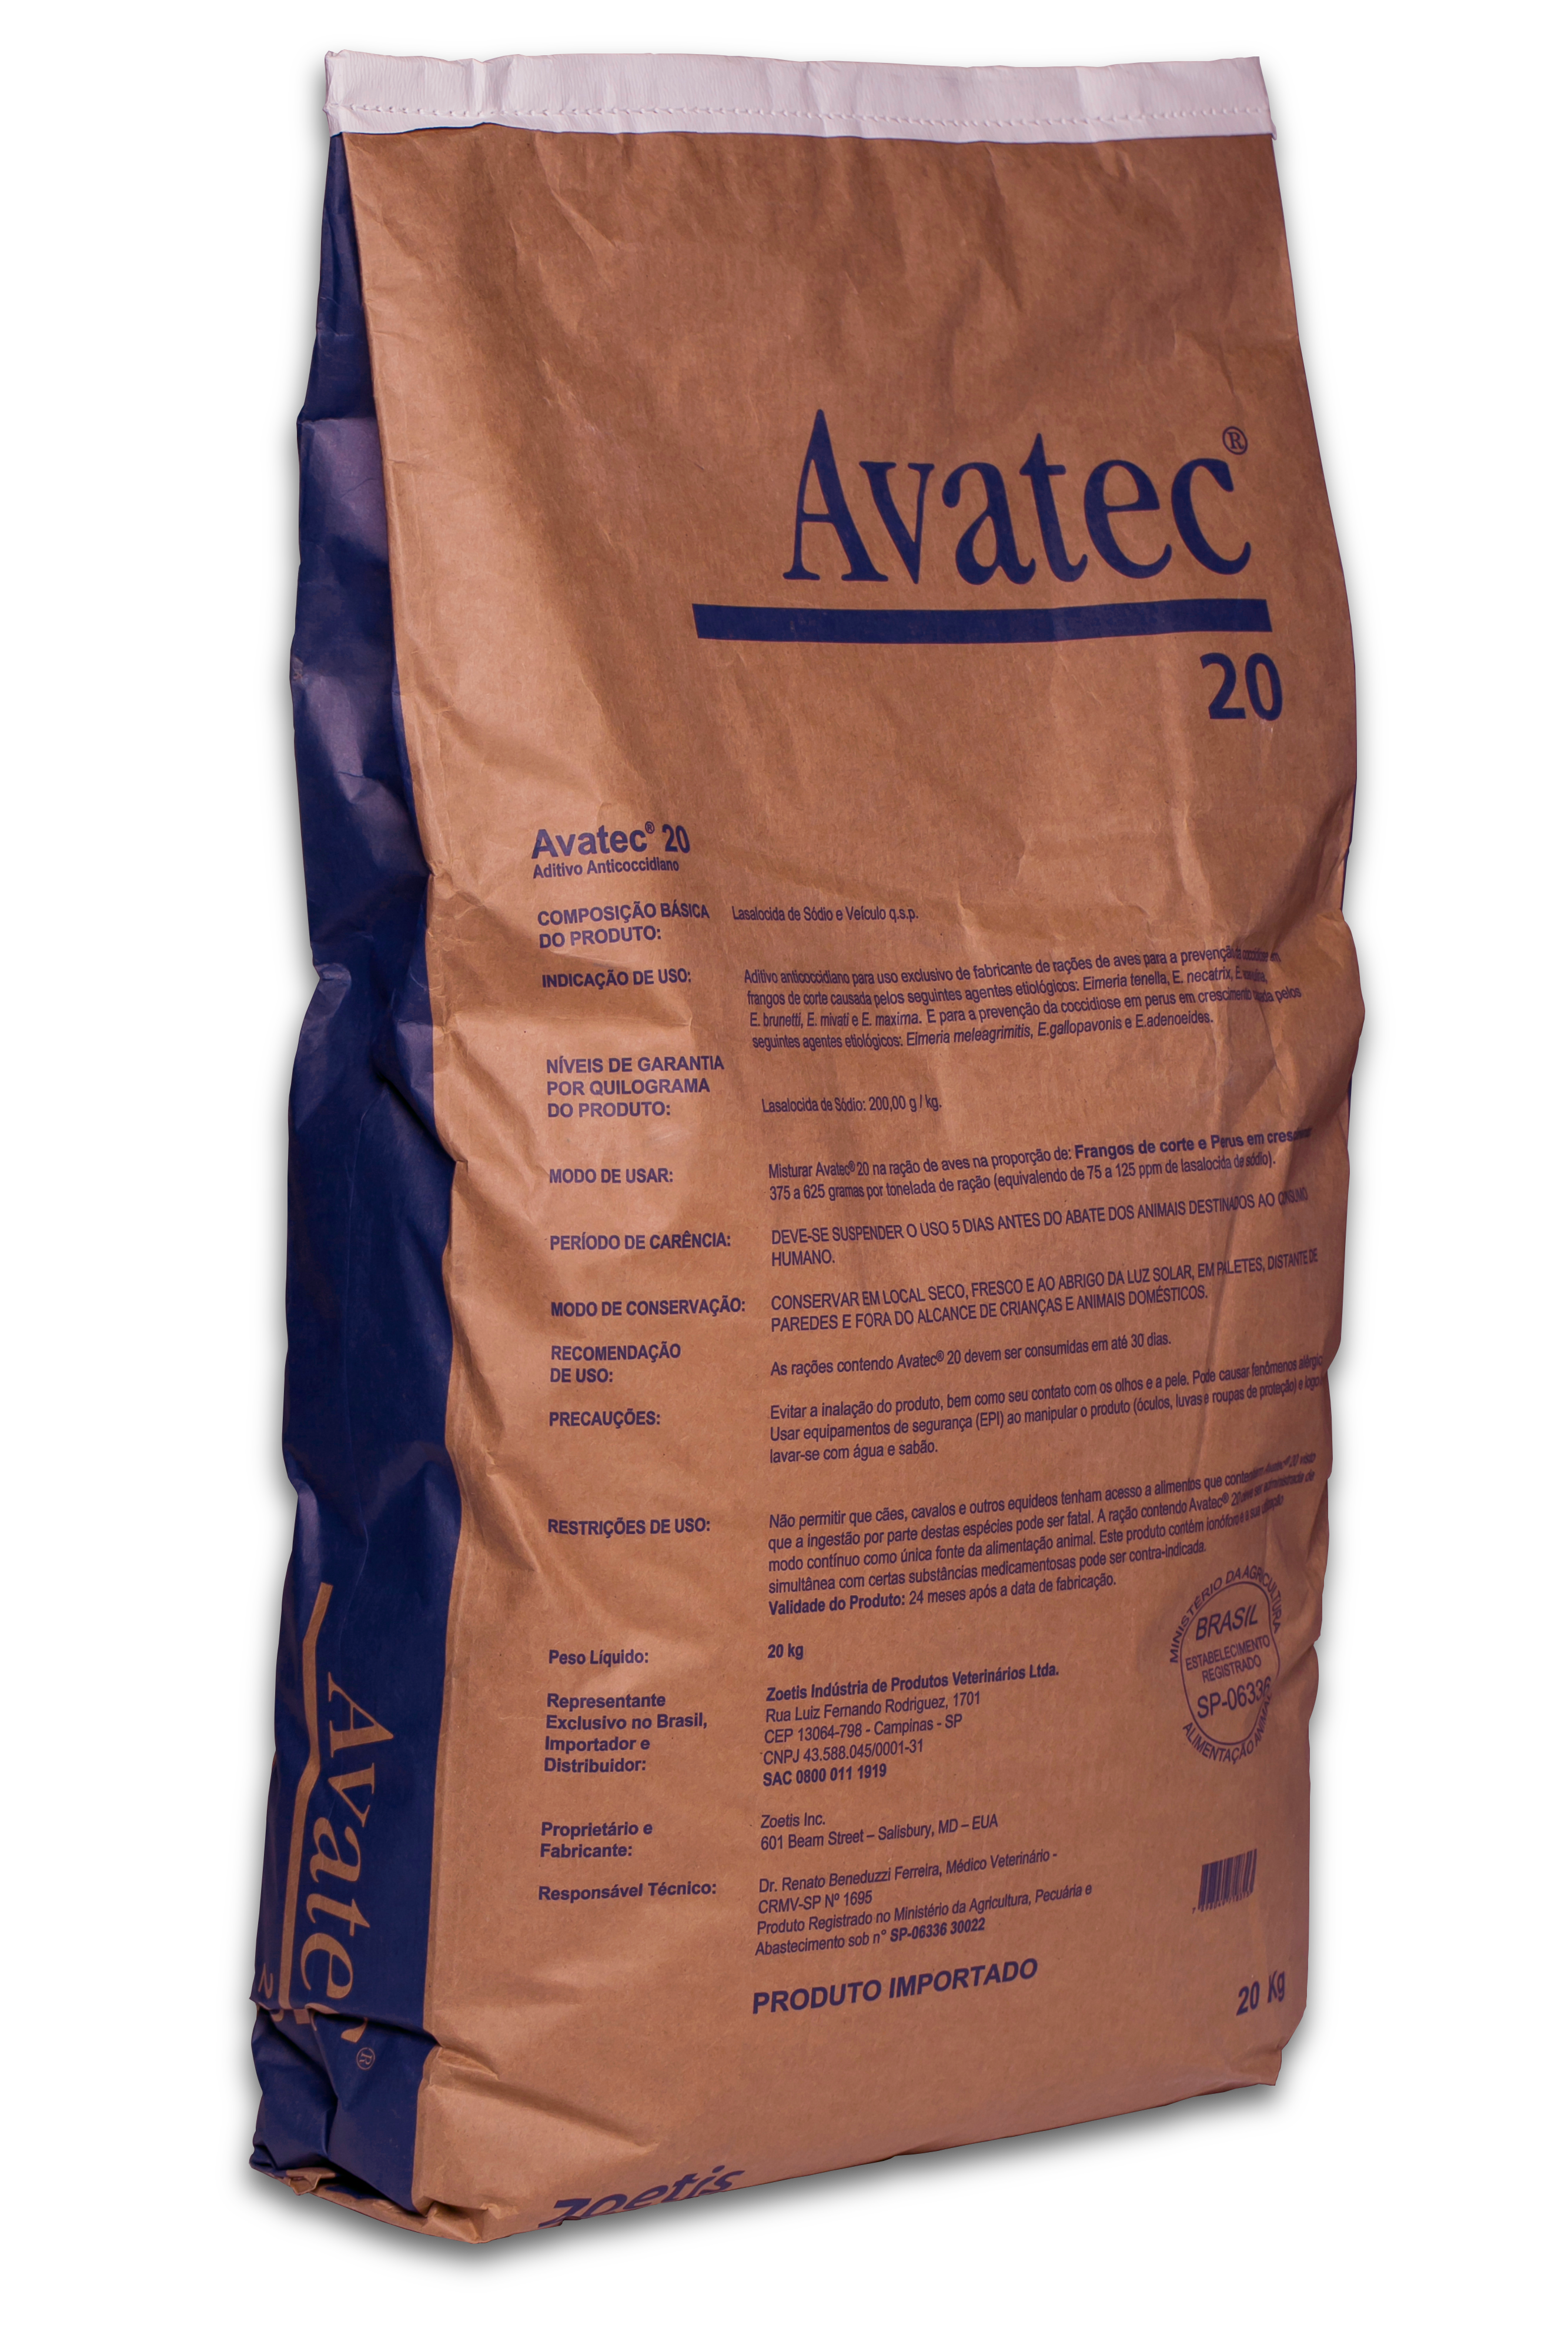 Avatec® 20